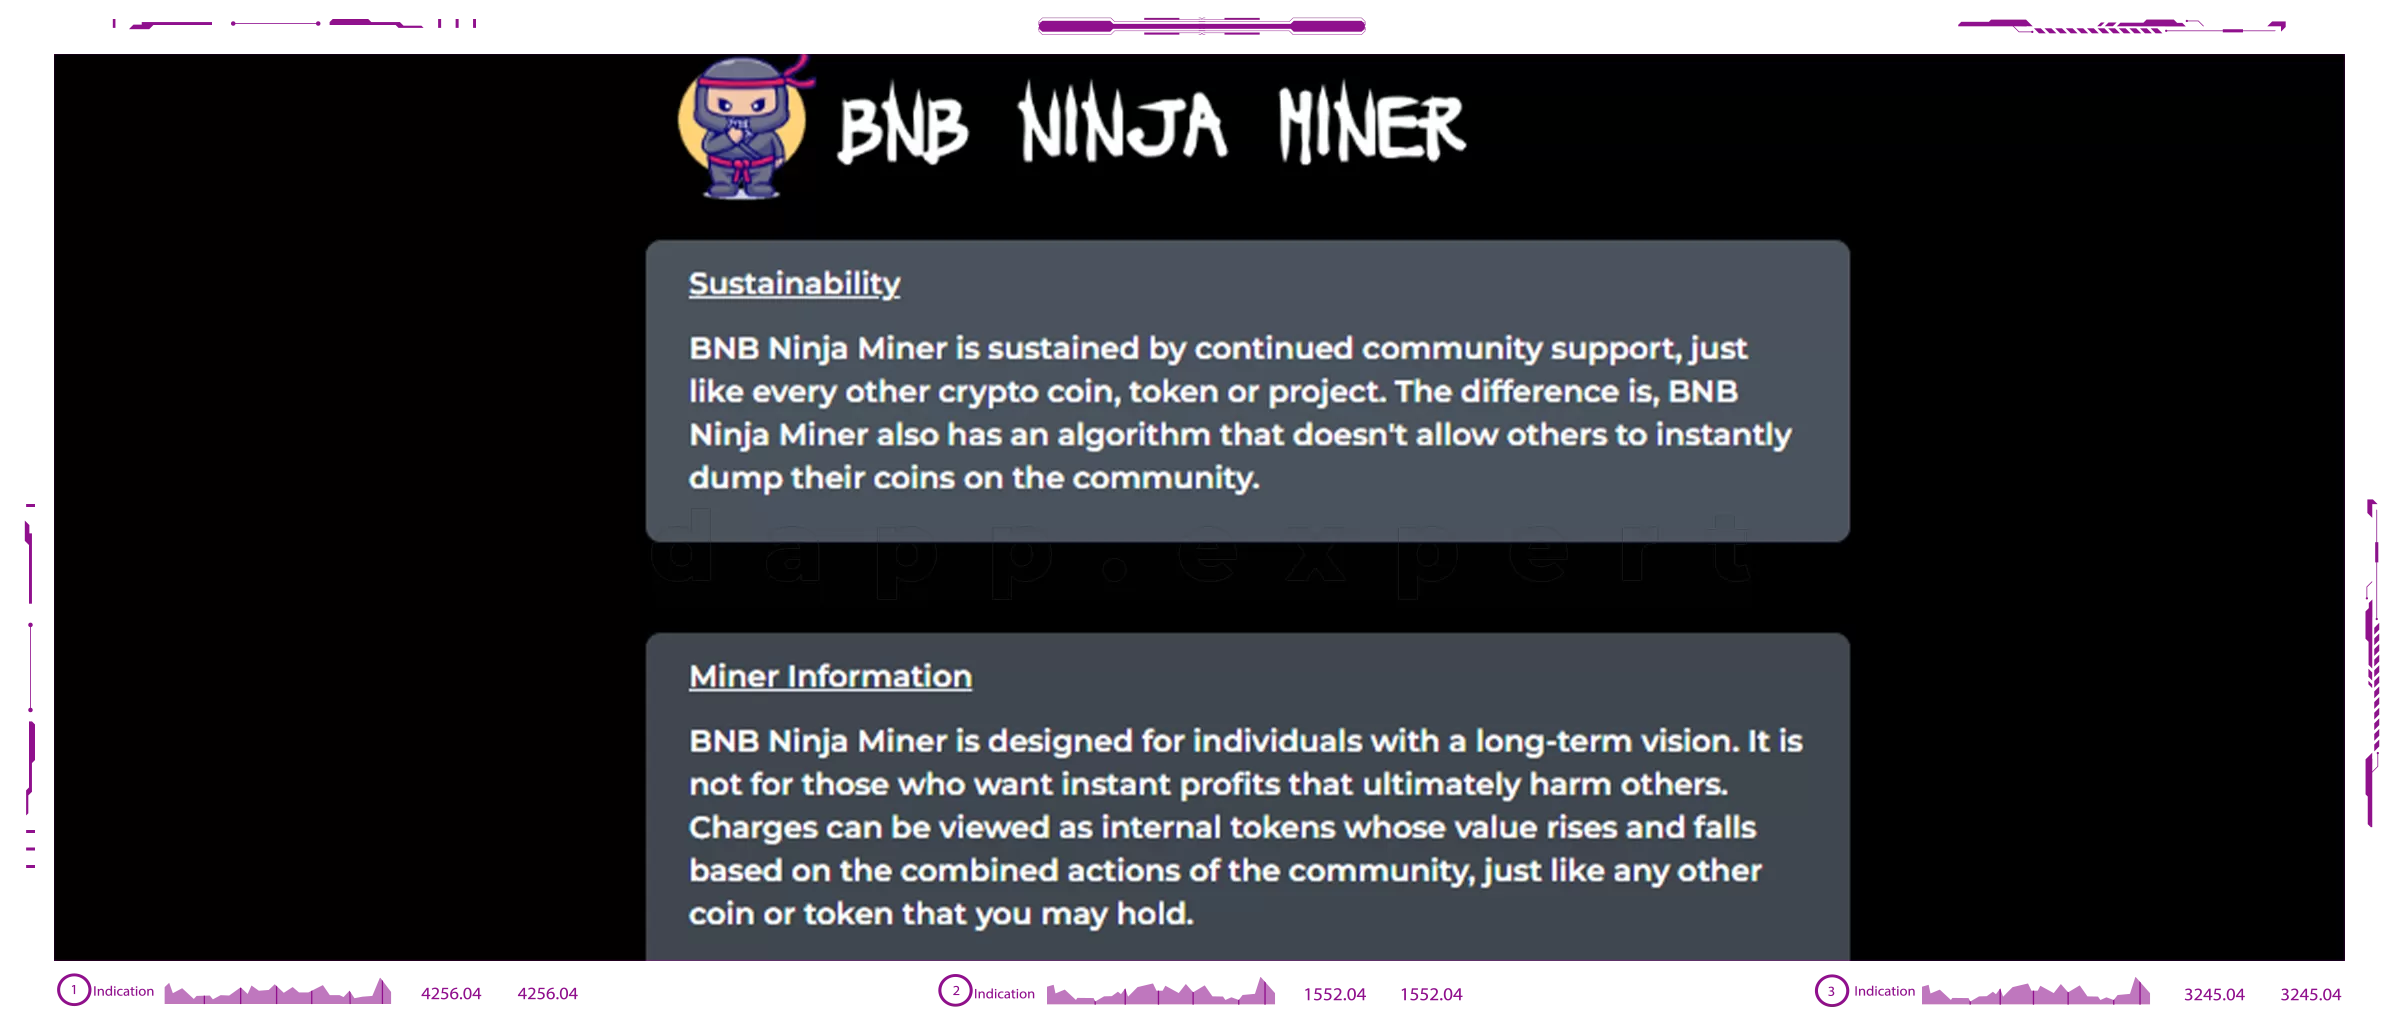 Dapp BNB Ninja Miner